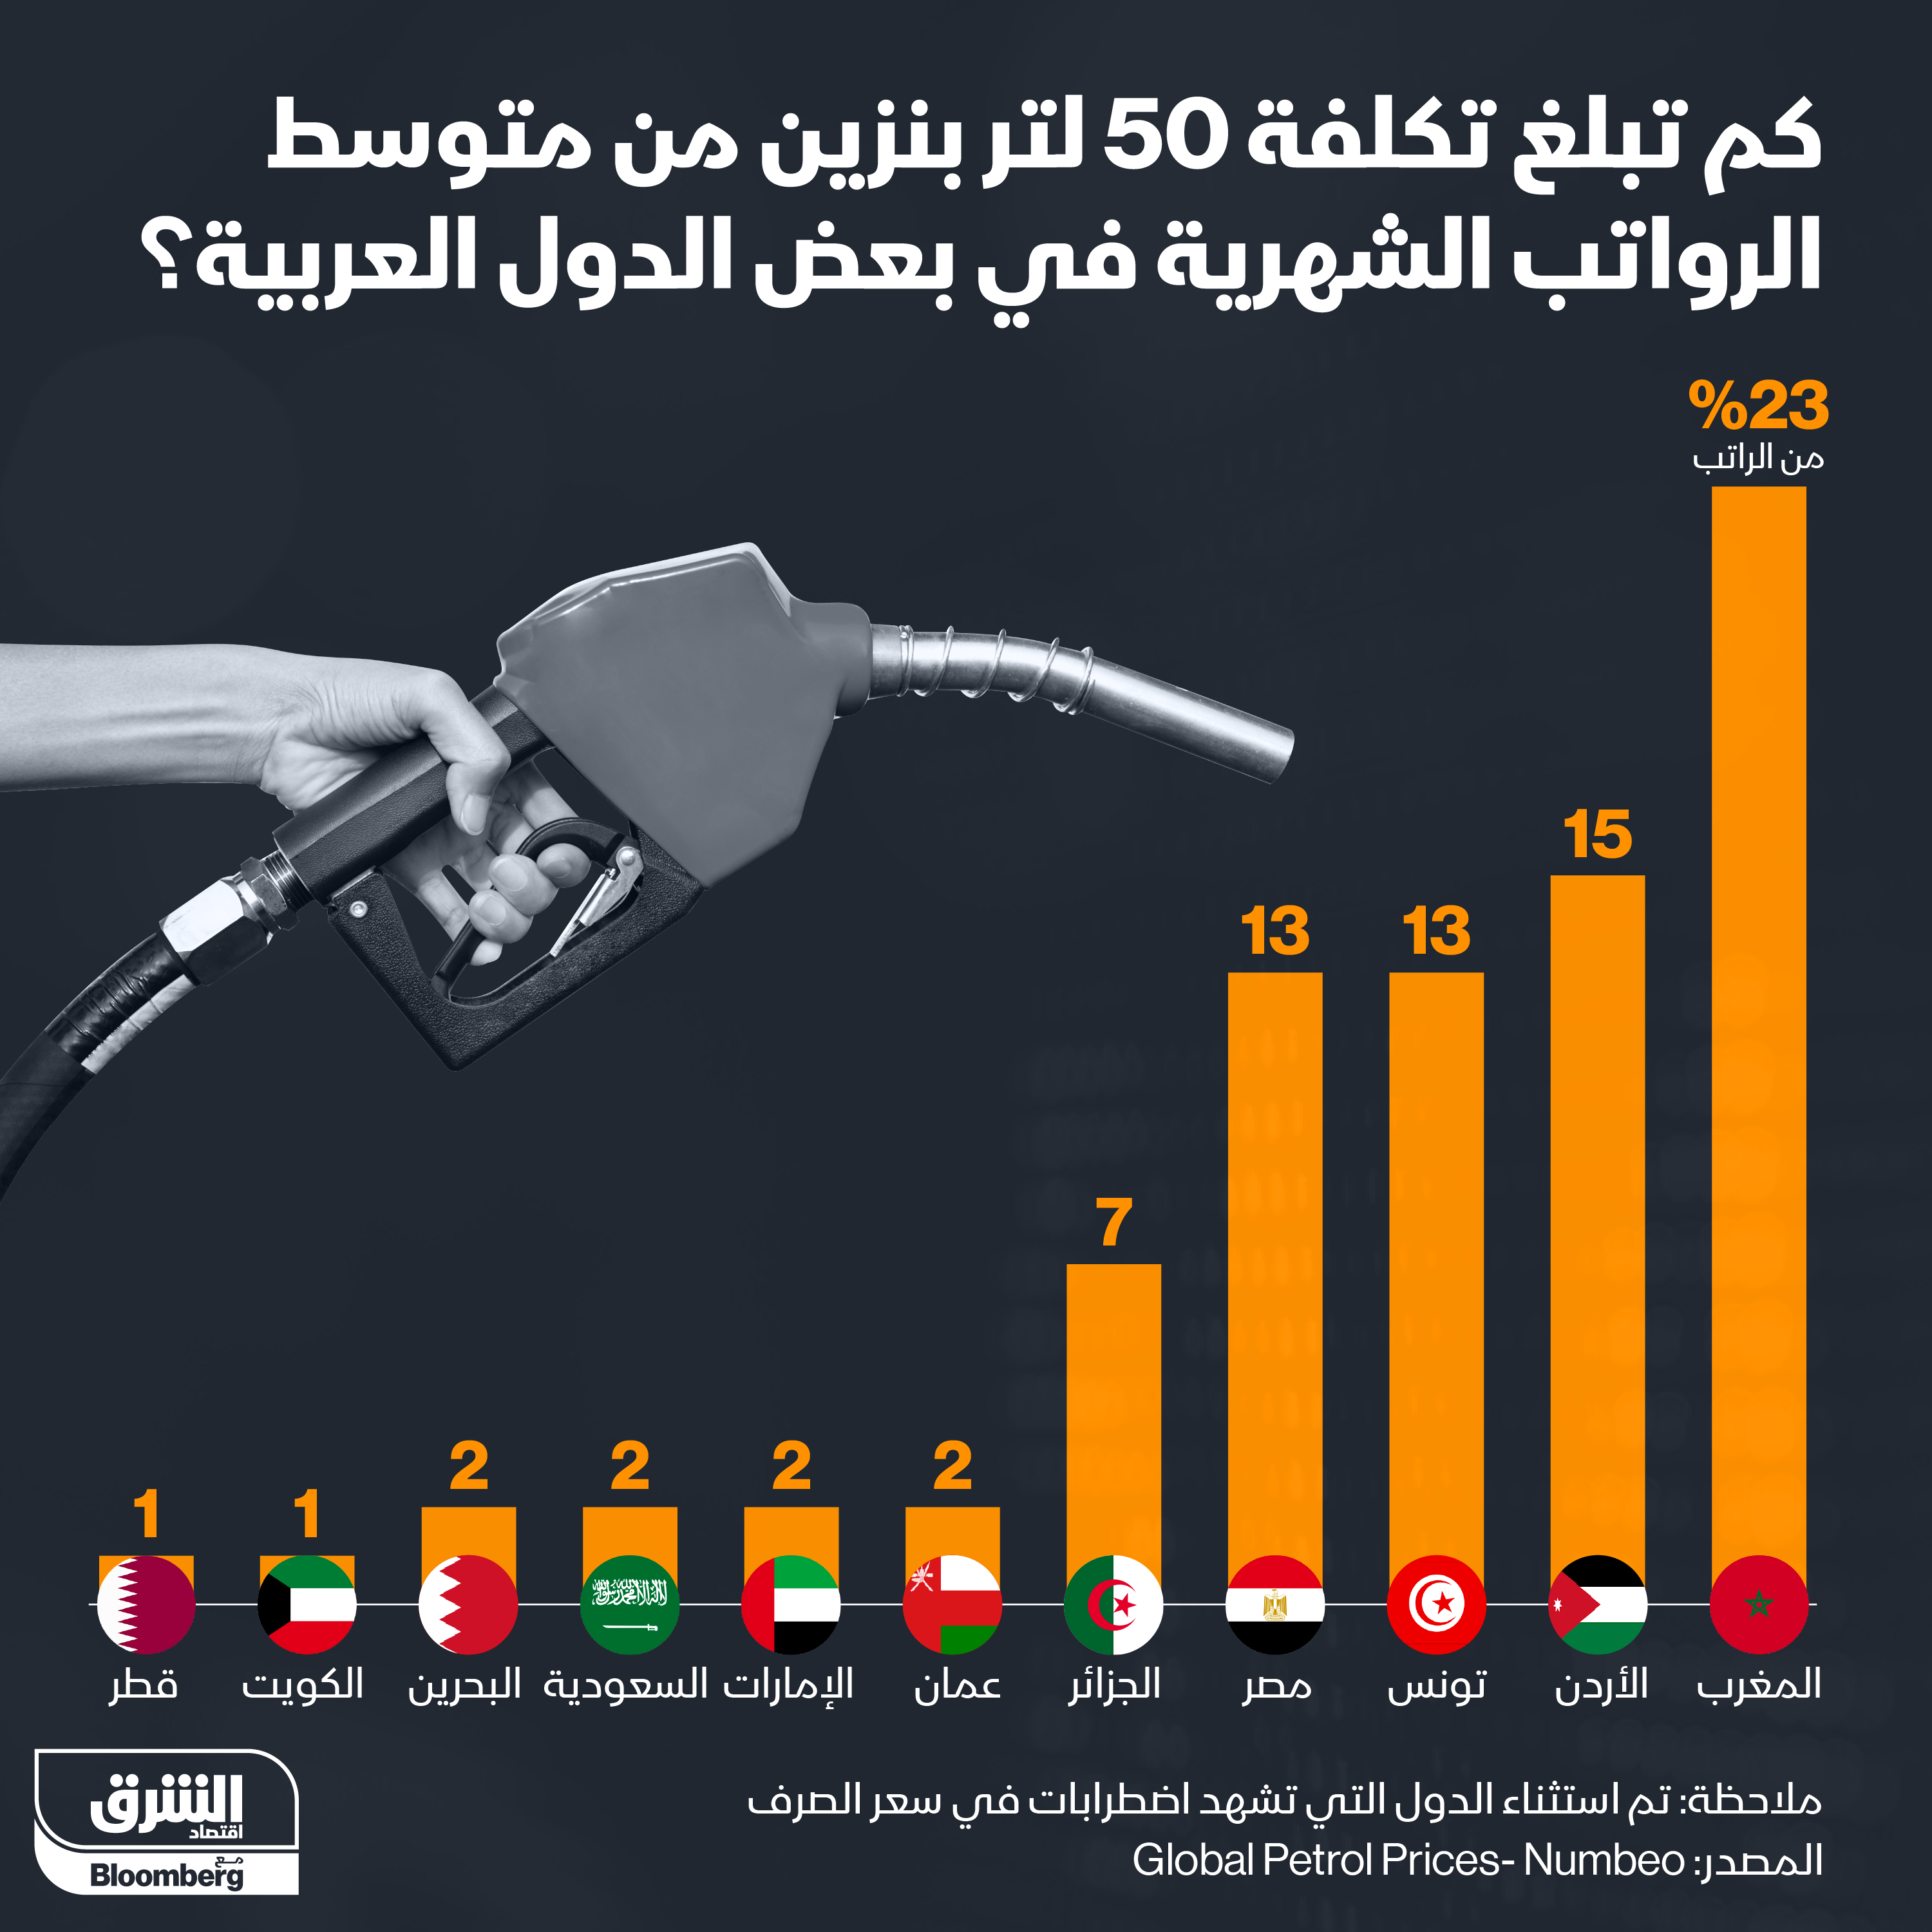 المغرب في صدارة تكلفة البنزين بالنسبة إلى متوسط الرواتب بالدول العربية